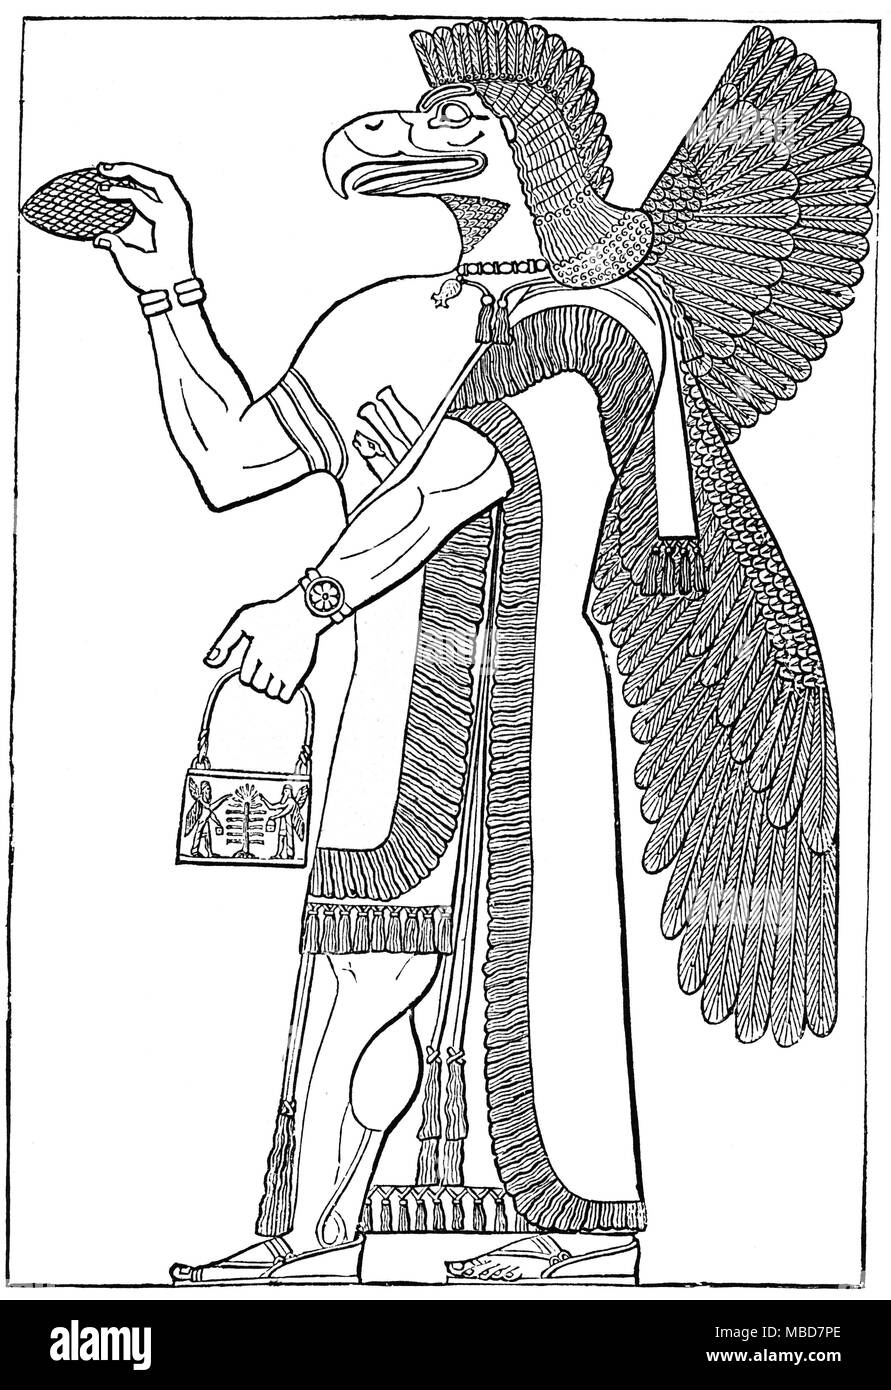 Demoni - CHIESA CALDEA Eagle con testa di demone alato o Dio, in piedi prima dell'albero sacro. Da Zénaïde A. Ragozin, Caldea fin dai primi tempi il sorgere di Assiria,1889 Foto Stock